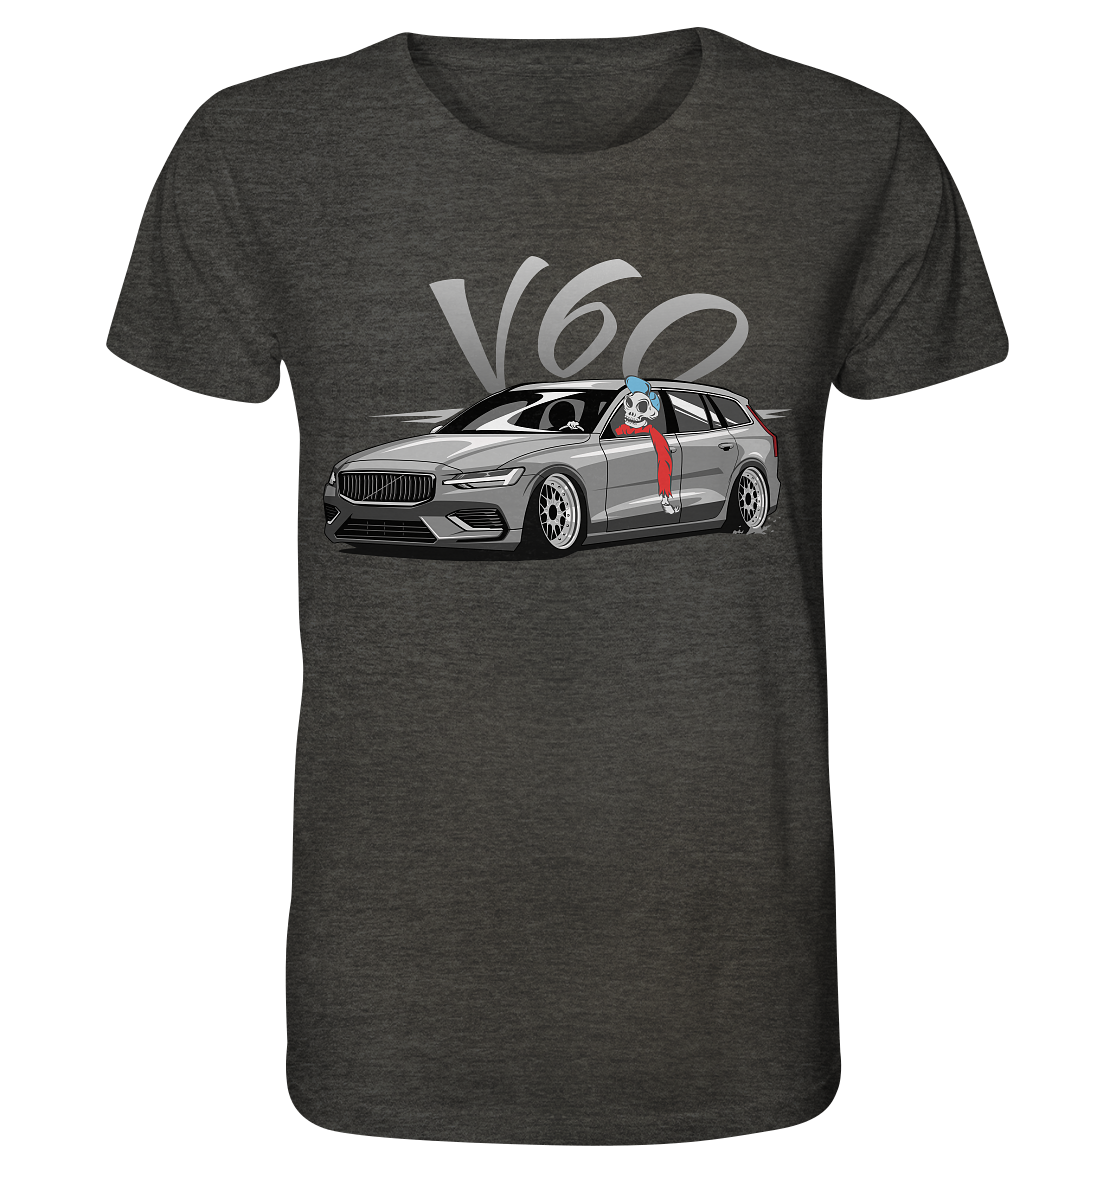 COD_VGKV60SKULL - Organic Shirt (meliert)